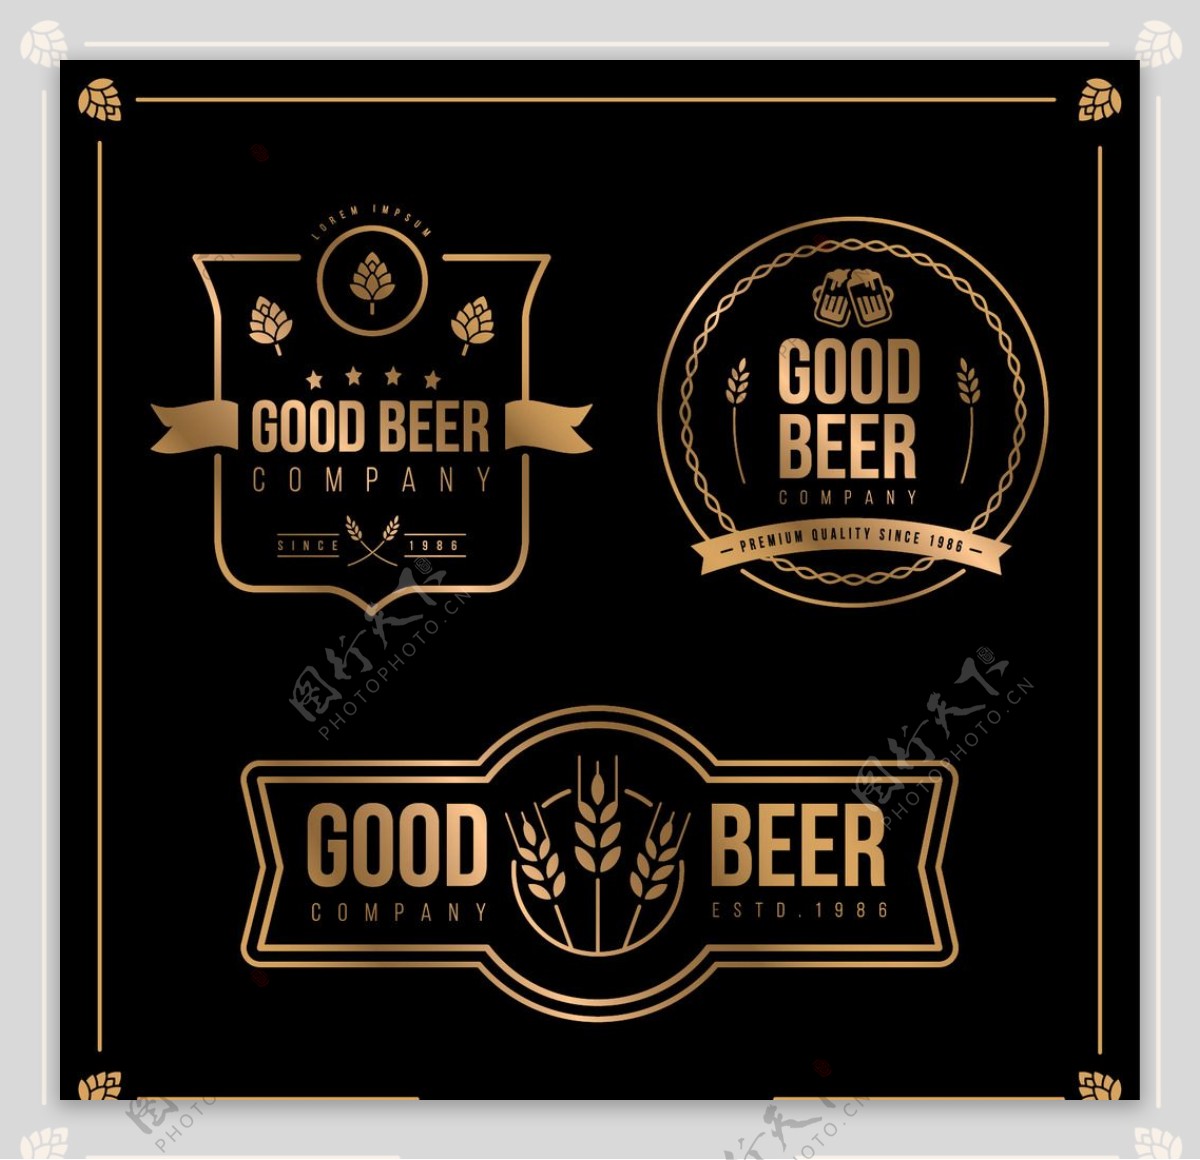 复古啤酒徽章